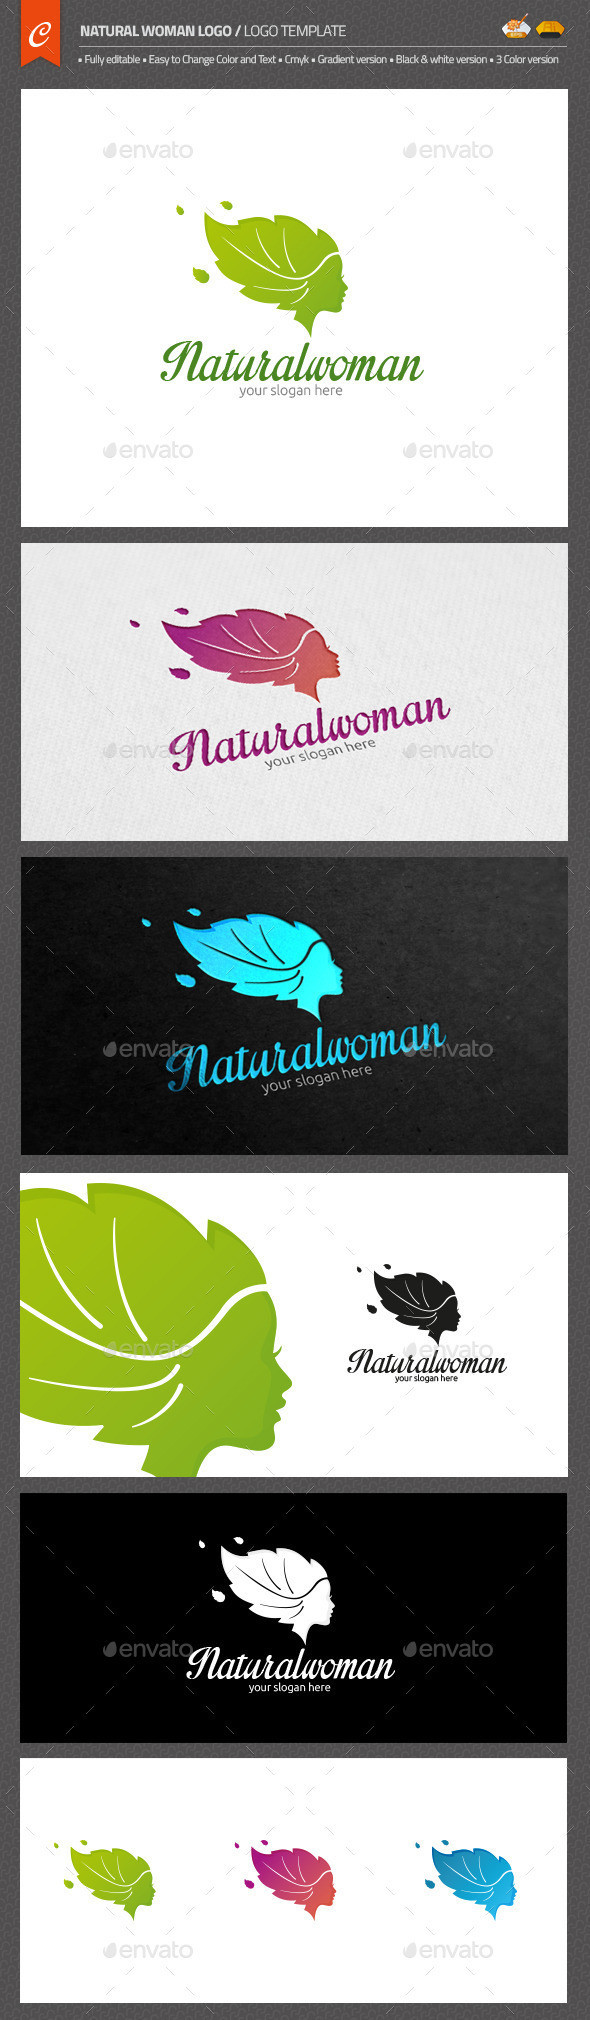 Natural woman logo